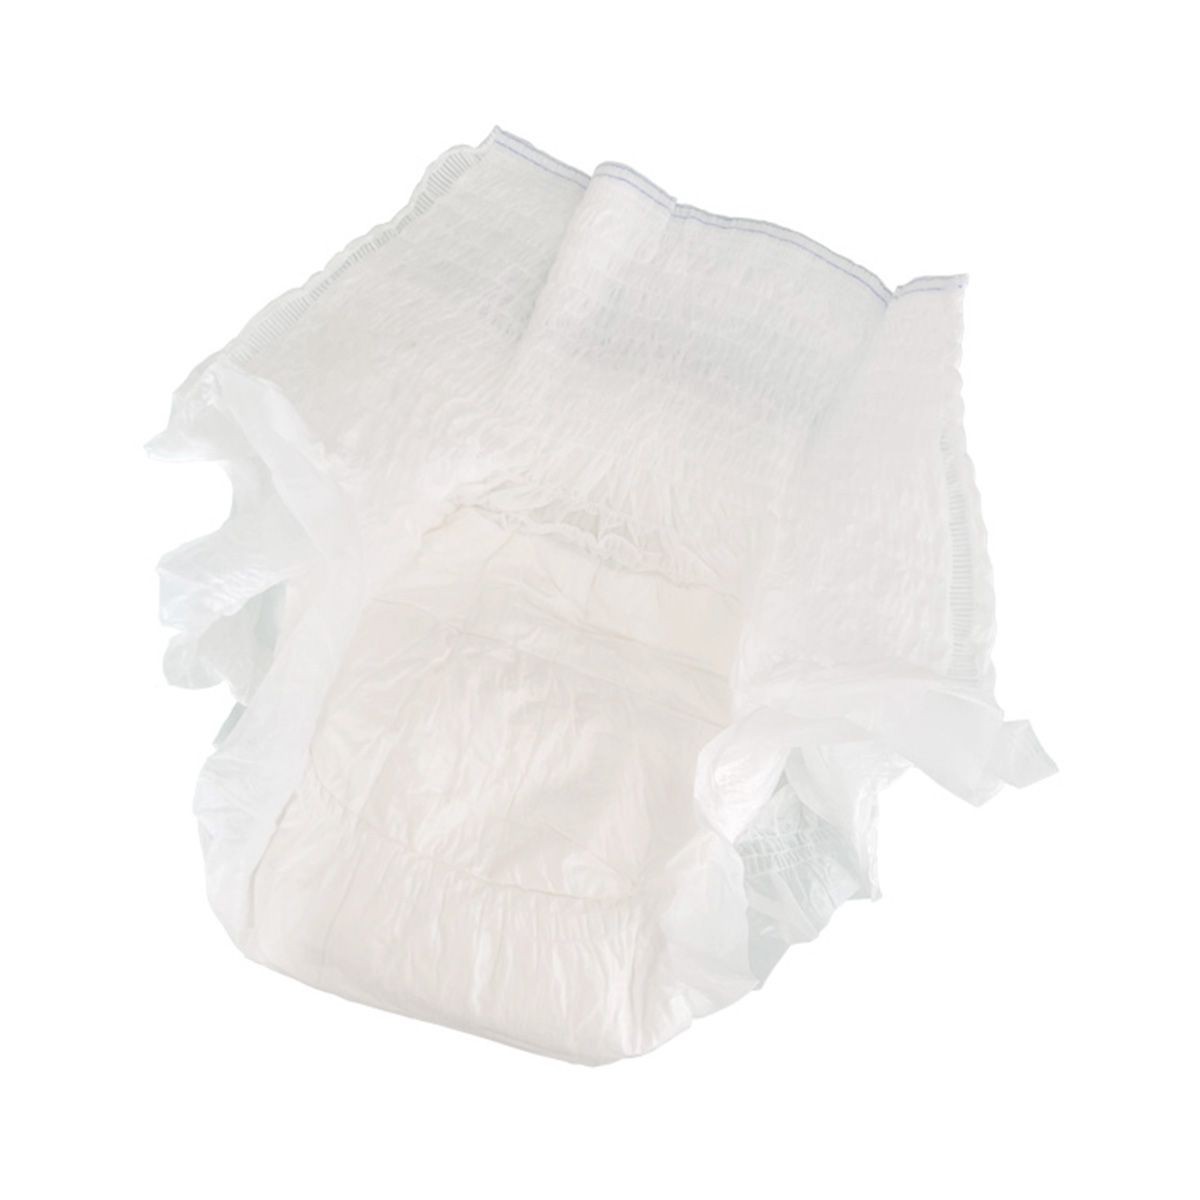 うす型紙パンツ(Lサイズ) 359529